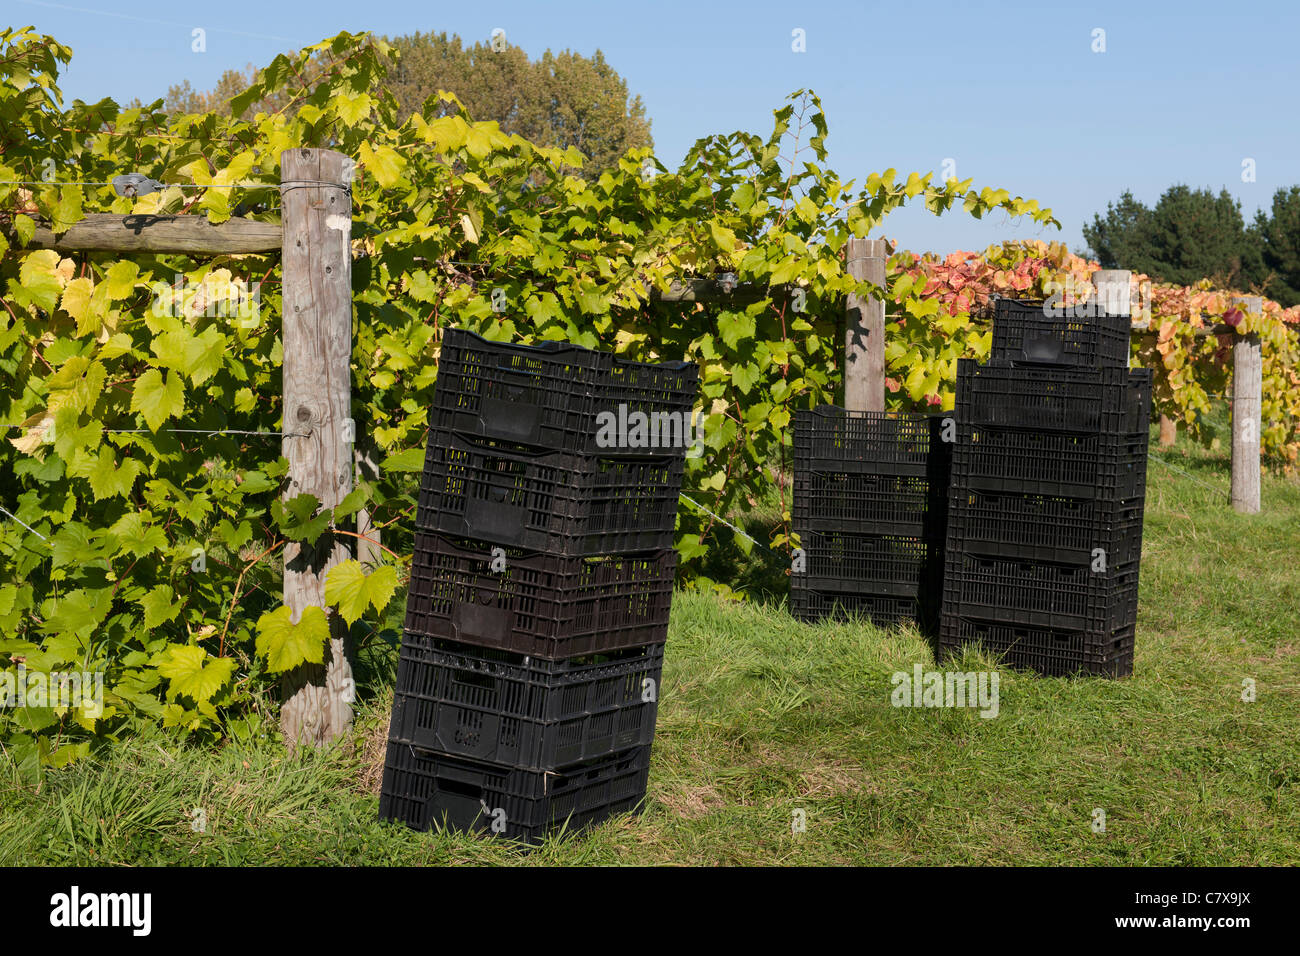 Wickham Vineyards, Wickham, Hampshire, England, UK; baskets waiting for the harvest of grapes. Stock Photo